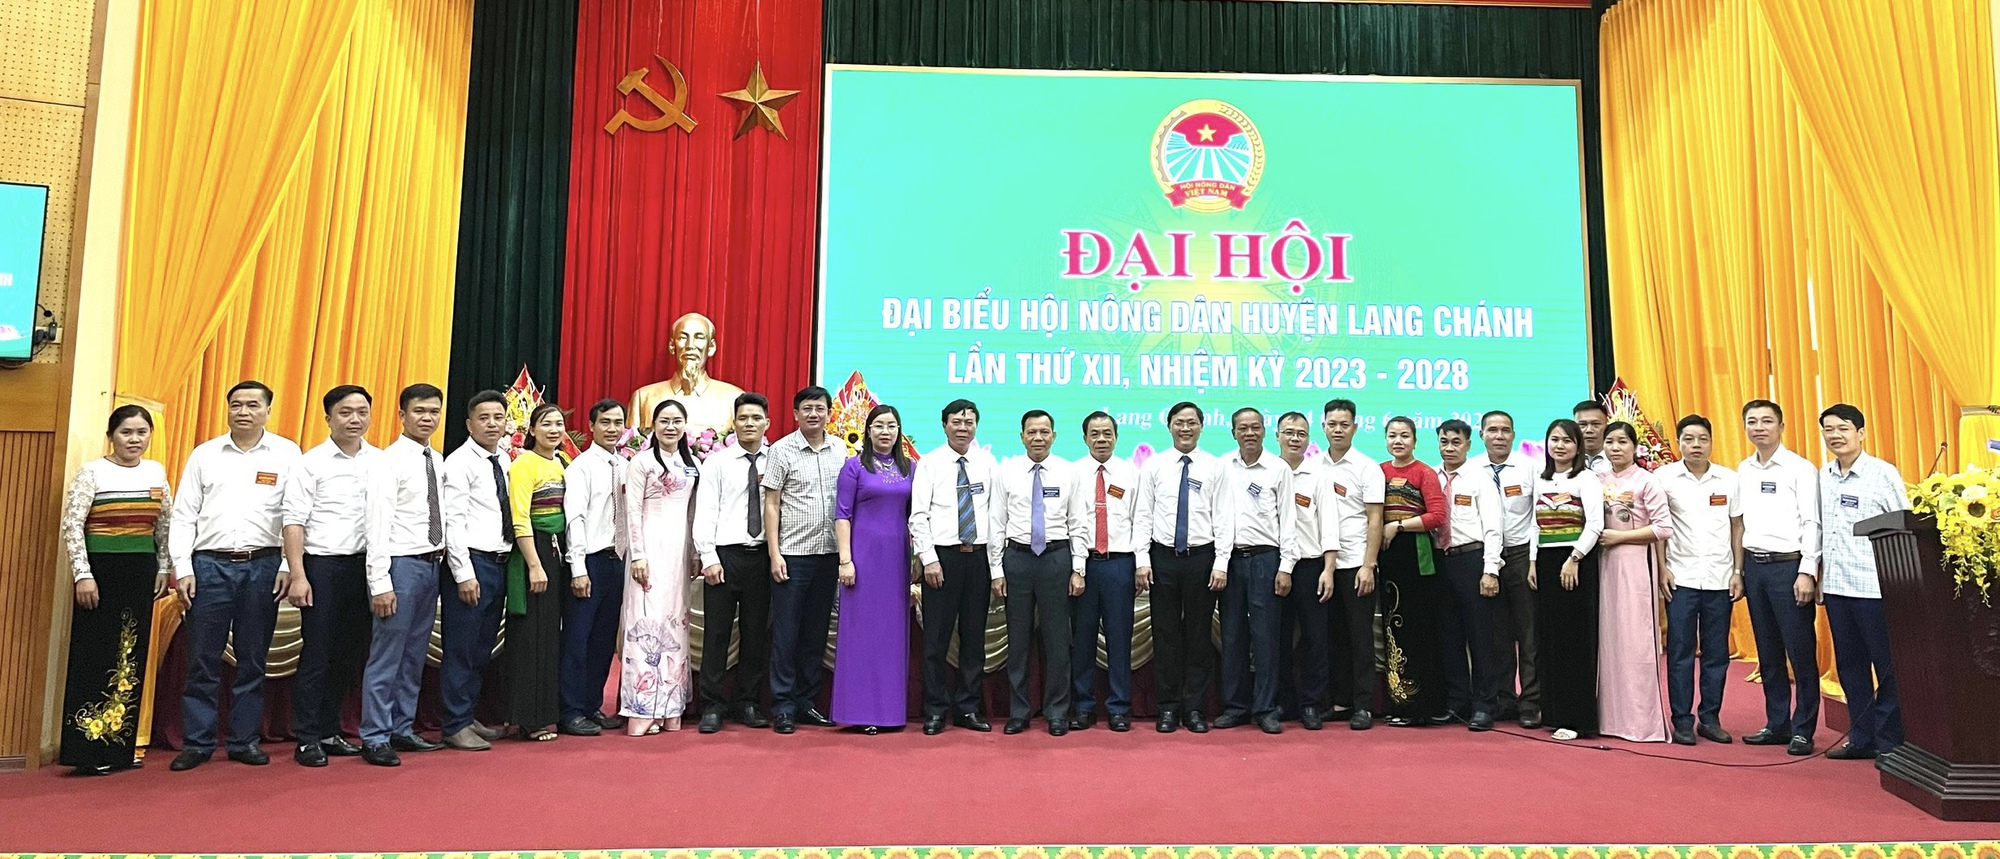 Ông Lò Văn Luân tái đắc cử Chủ tịch Hội Nông dân huyện Lang Chánh, tỉnh Thanh Hóa - Ảnh 4.